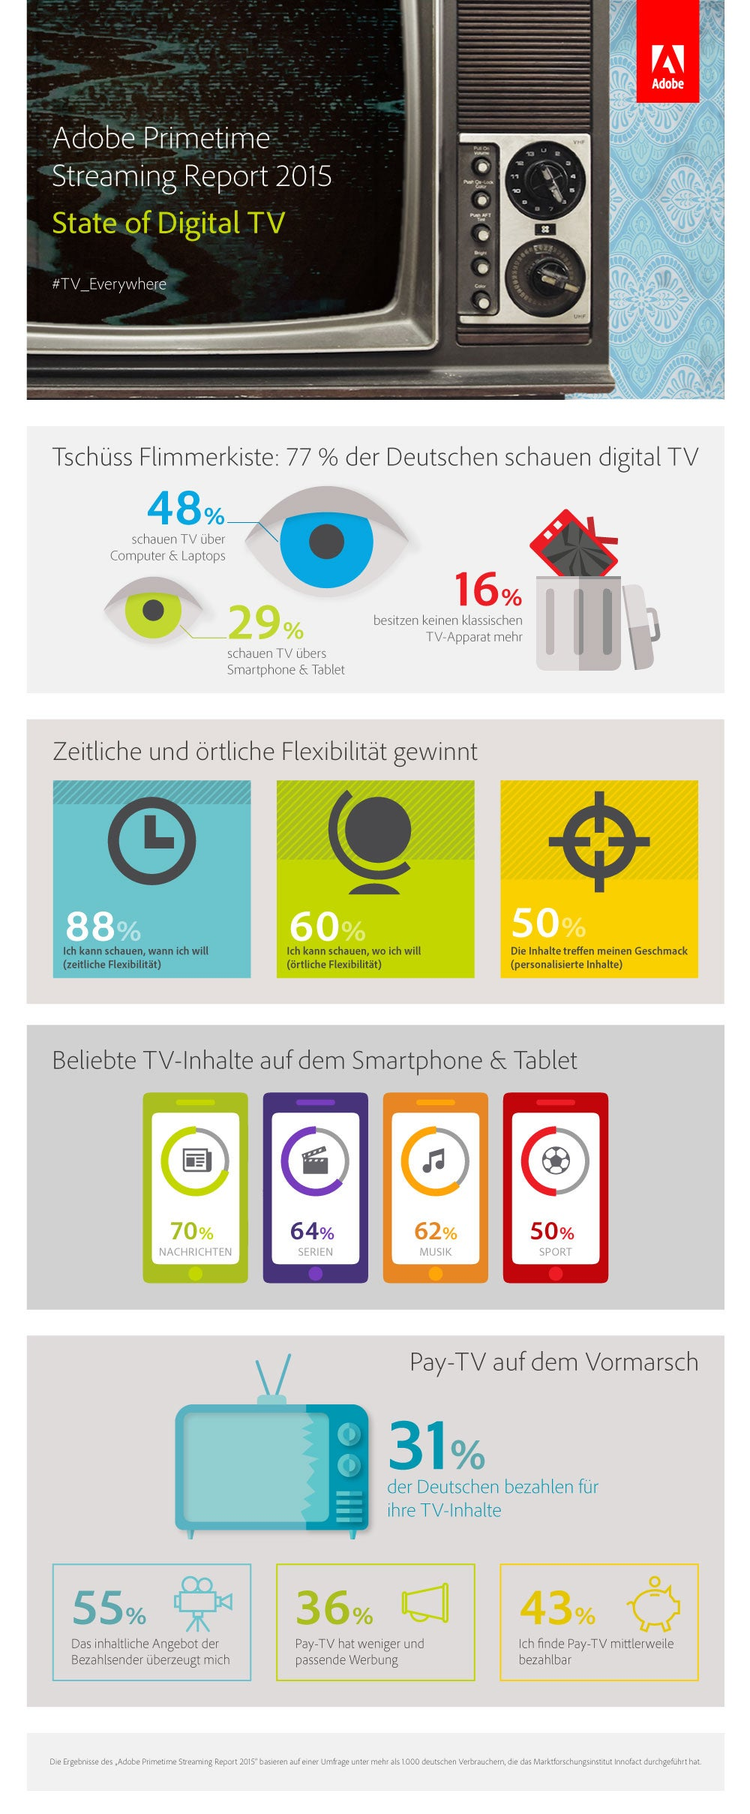 Adobe-Primetime-Streaming-Report-2015